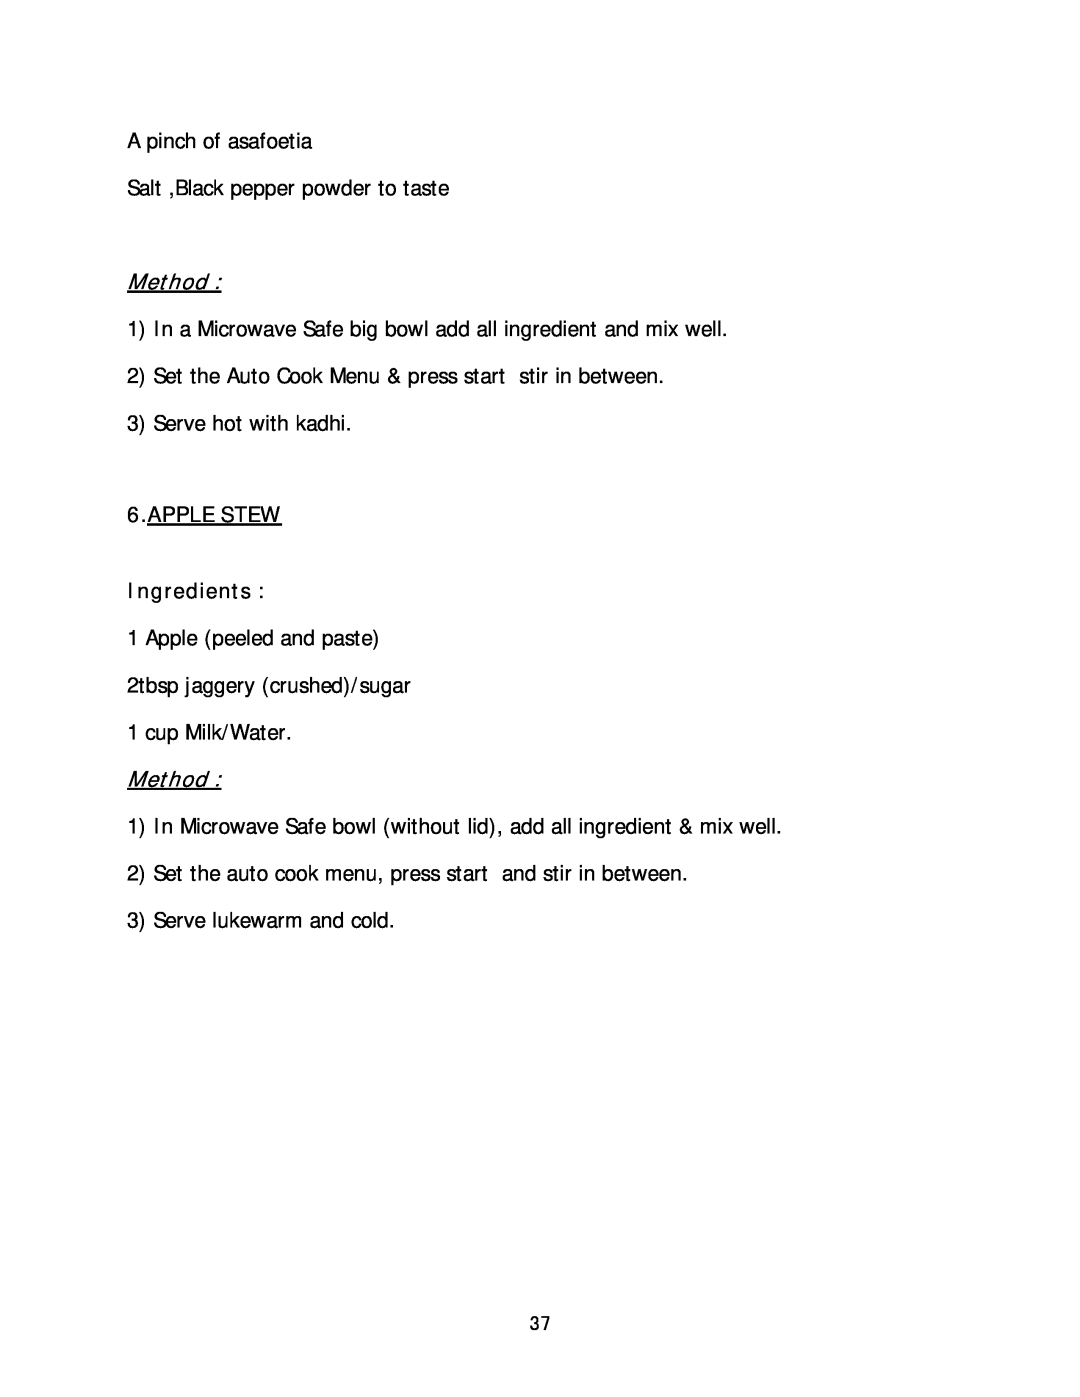 Haier HIL 2810EGCB manual Method, APPLE STEW Ingredients 